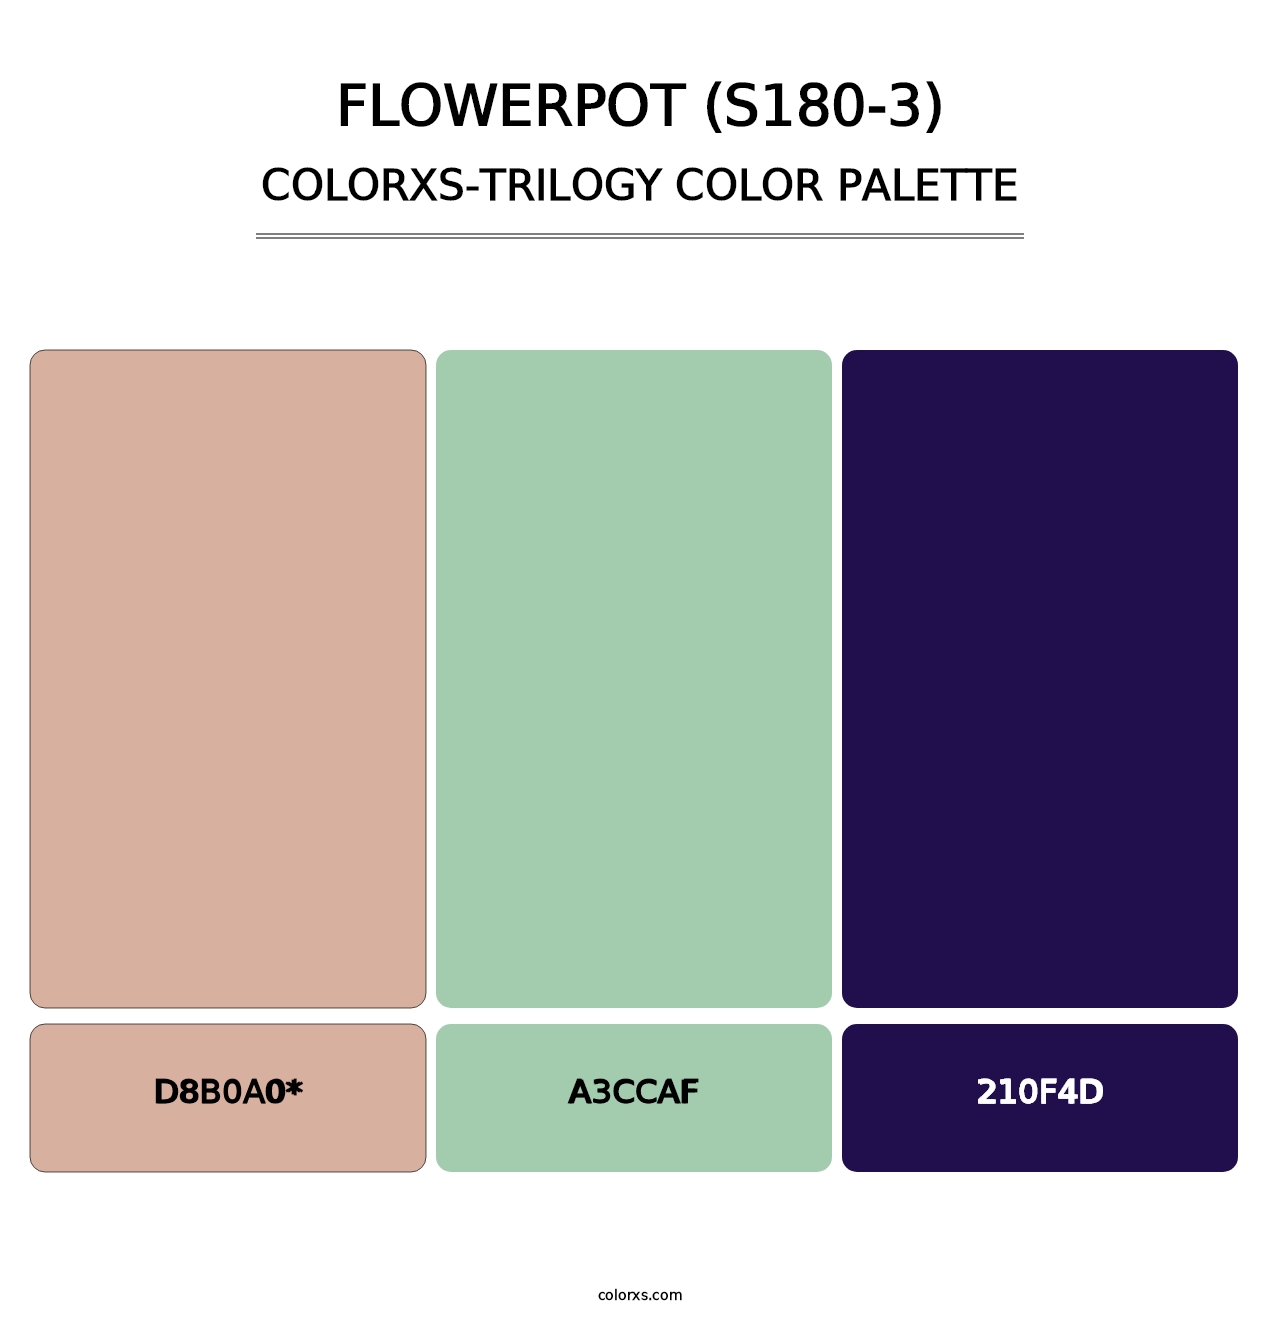 Flowerpot (S180-3) - Colorxs Trilogy Palette